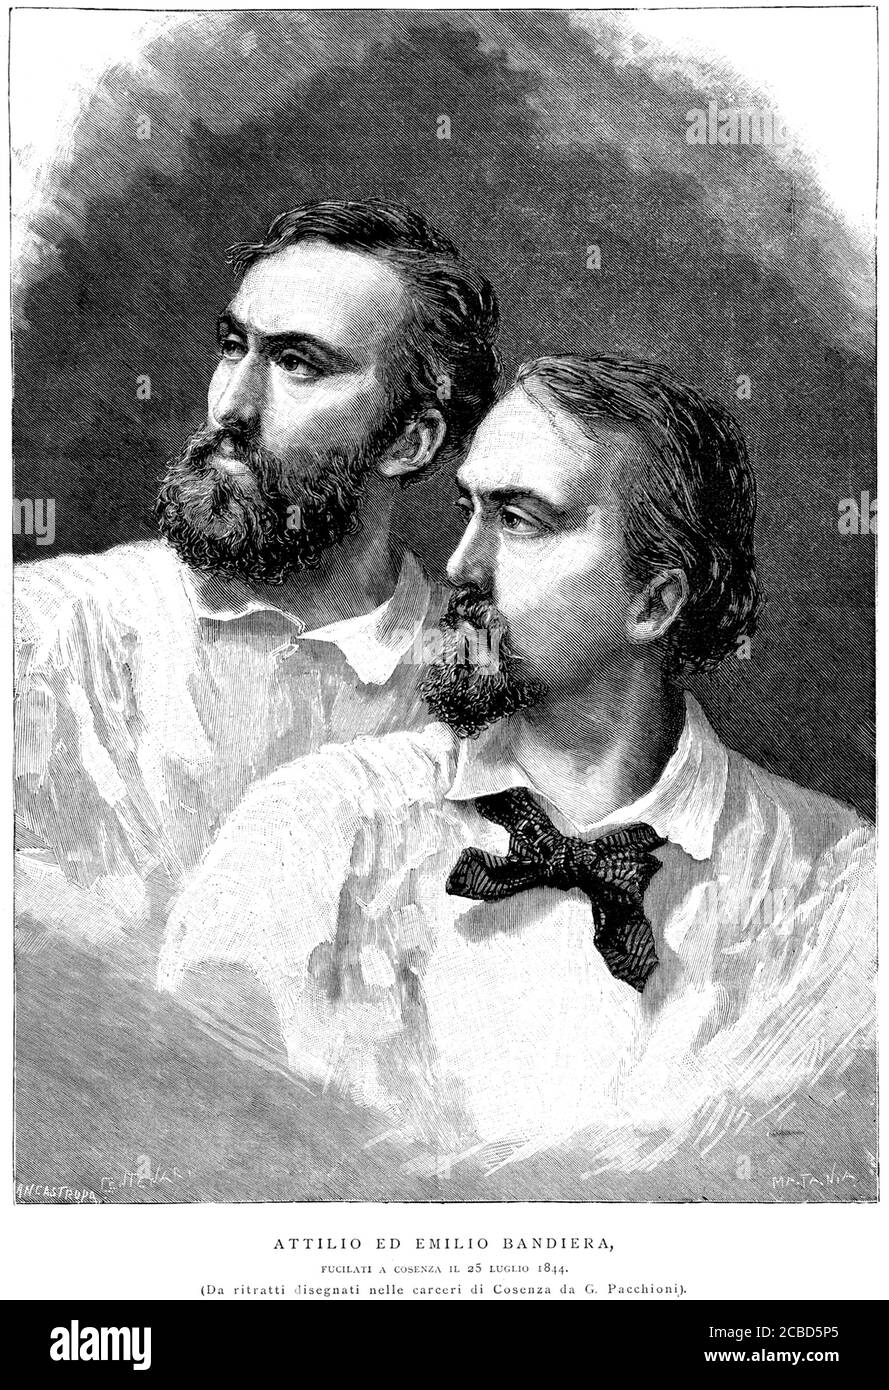 1844 , ITALIA : los dos patriotas italianos hermanos ATTILIO ( 1810 - 1844 ) y EMILIO BANDIERA ( 1819 - 1844 ) juntos murieron en Cosenza ( Calabria - Italia del Sur ) el día 25 de julio de 1844 . Retratos grabados por Matania de la obra original de G. Pacchioni , pubblishe en 1892 . - FRATELLI - Unità d' ITALIA - RISORGIMENTO - ITALIA - FOTO STORICHE - HISTORIA - ilustración - illustrazione - grabado - incisione - barba - barba - patriota - patrioti - eroi - eroismo - partriottismo - héroes ---- Archivio GBB Foto de stock